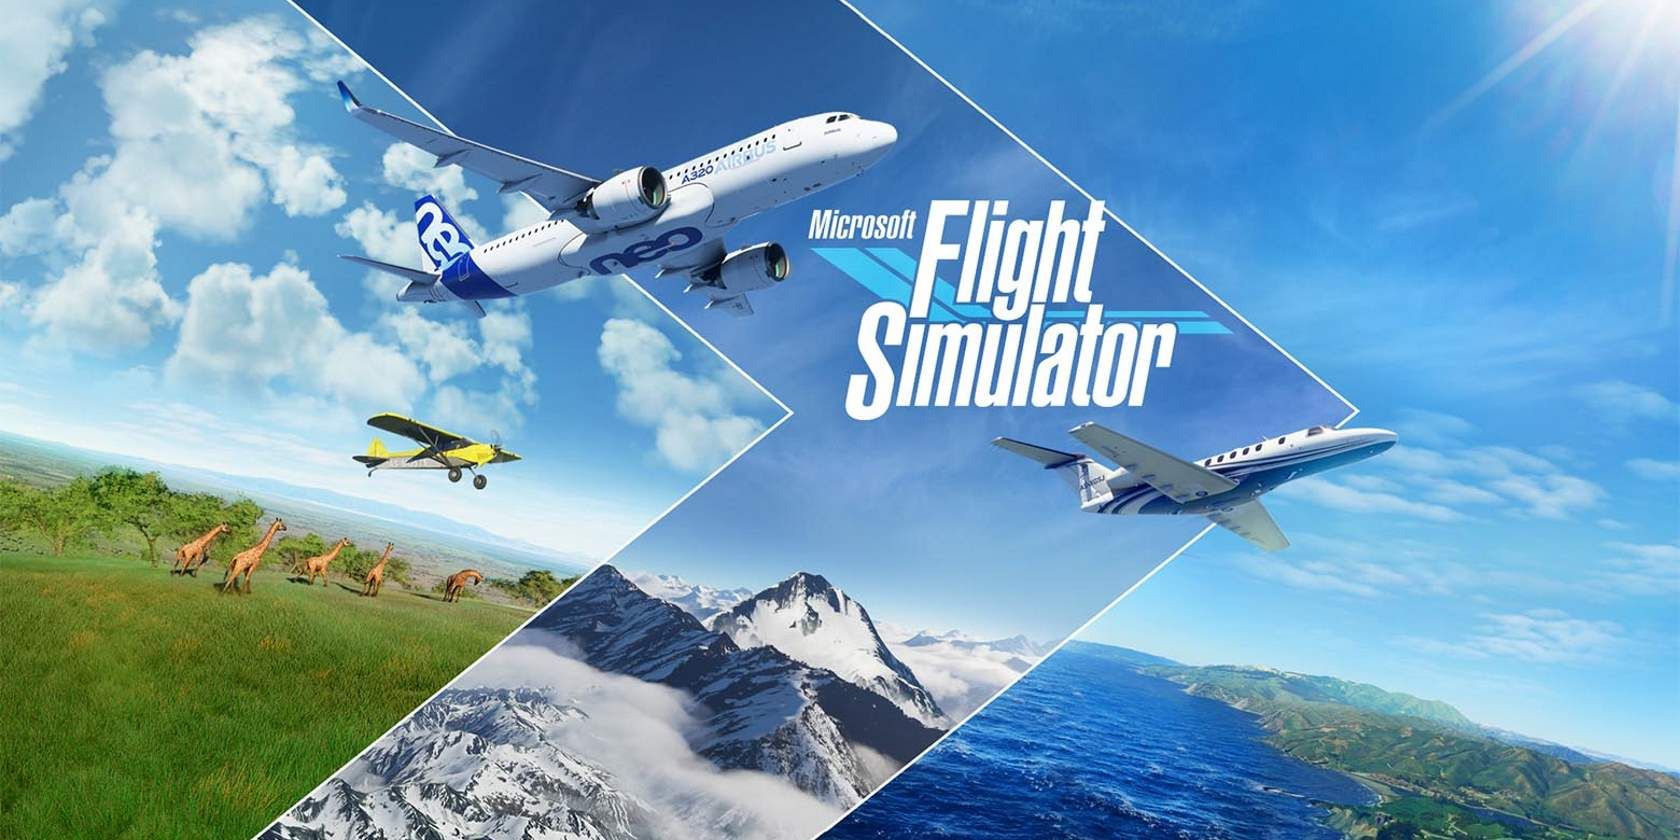 flight simulator games free download for mac